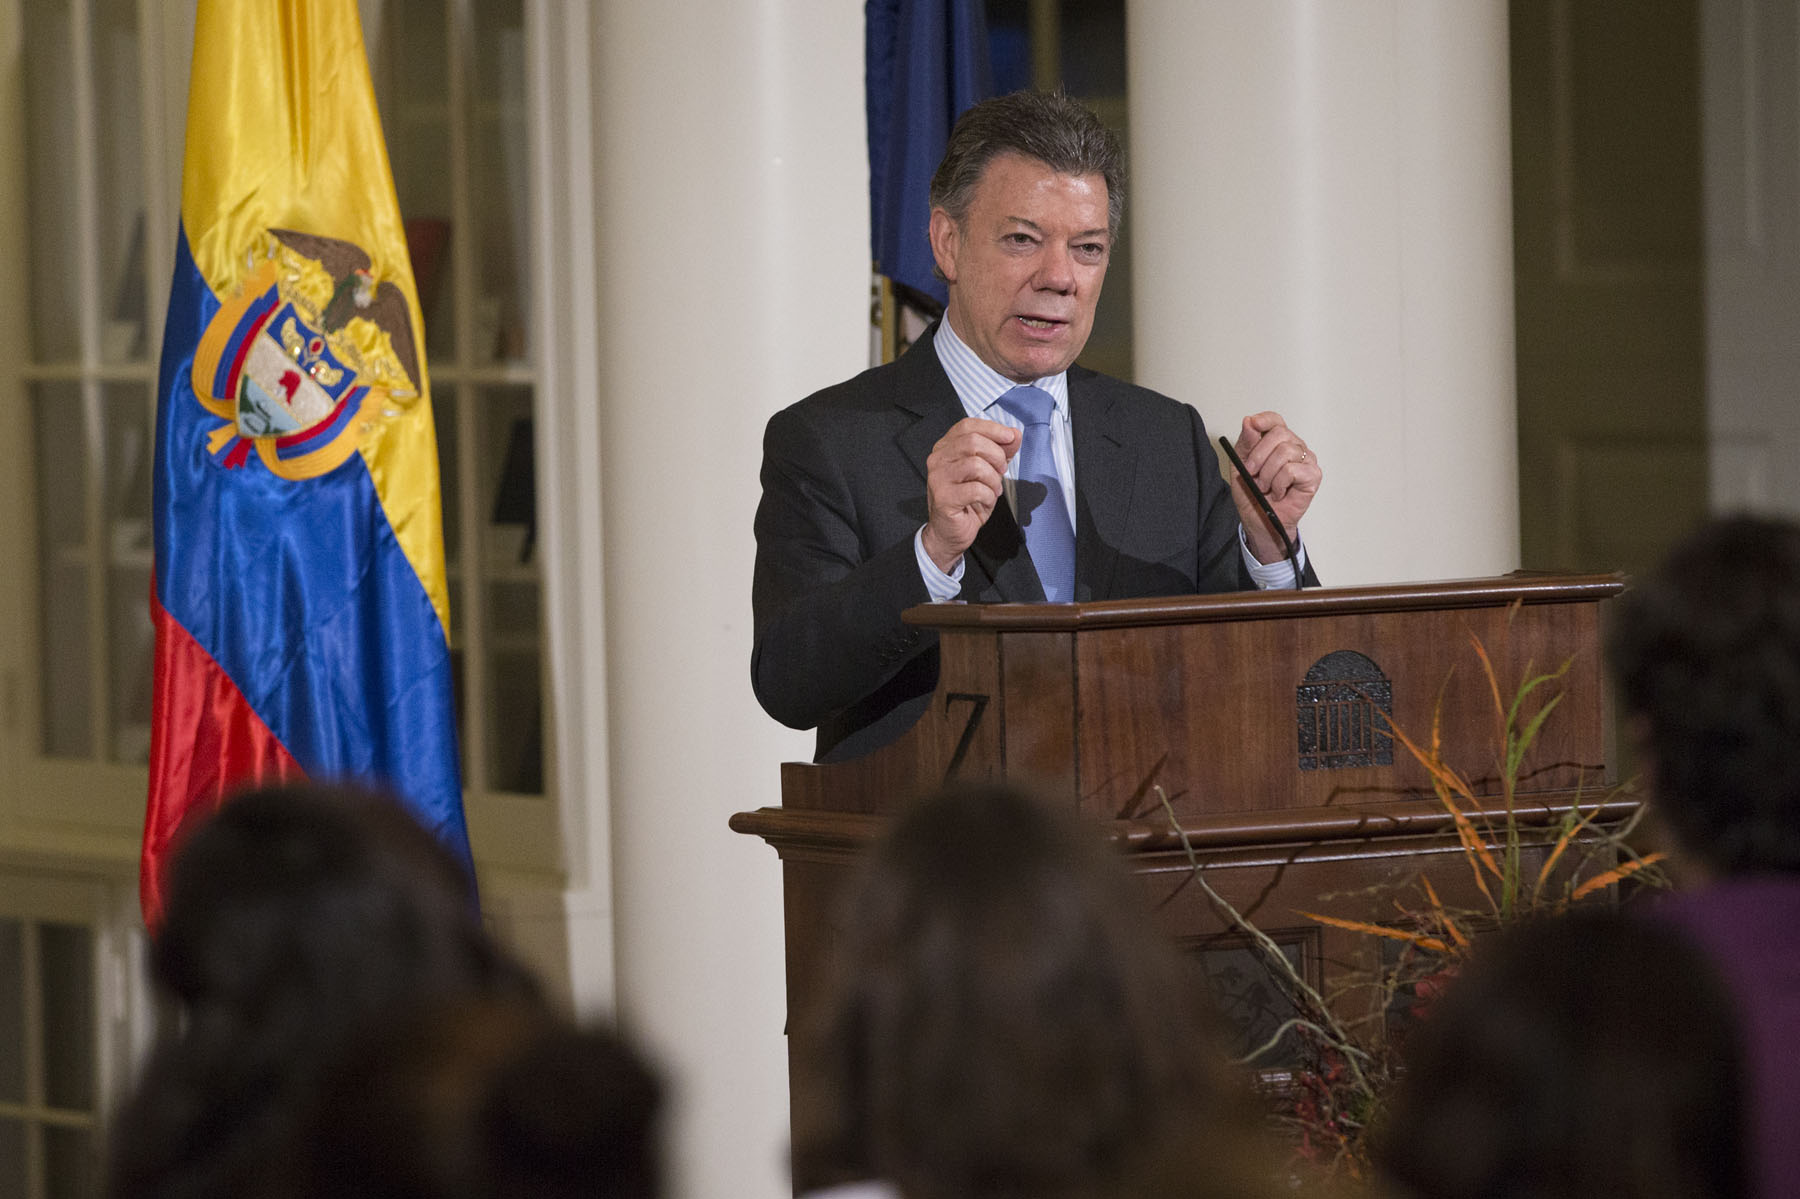 Juan Manuel Santos speaking at a podium